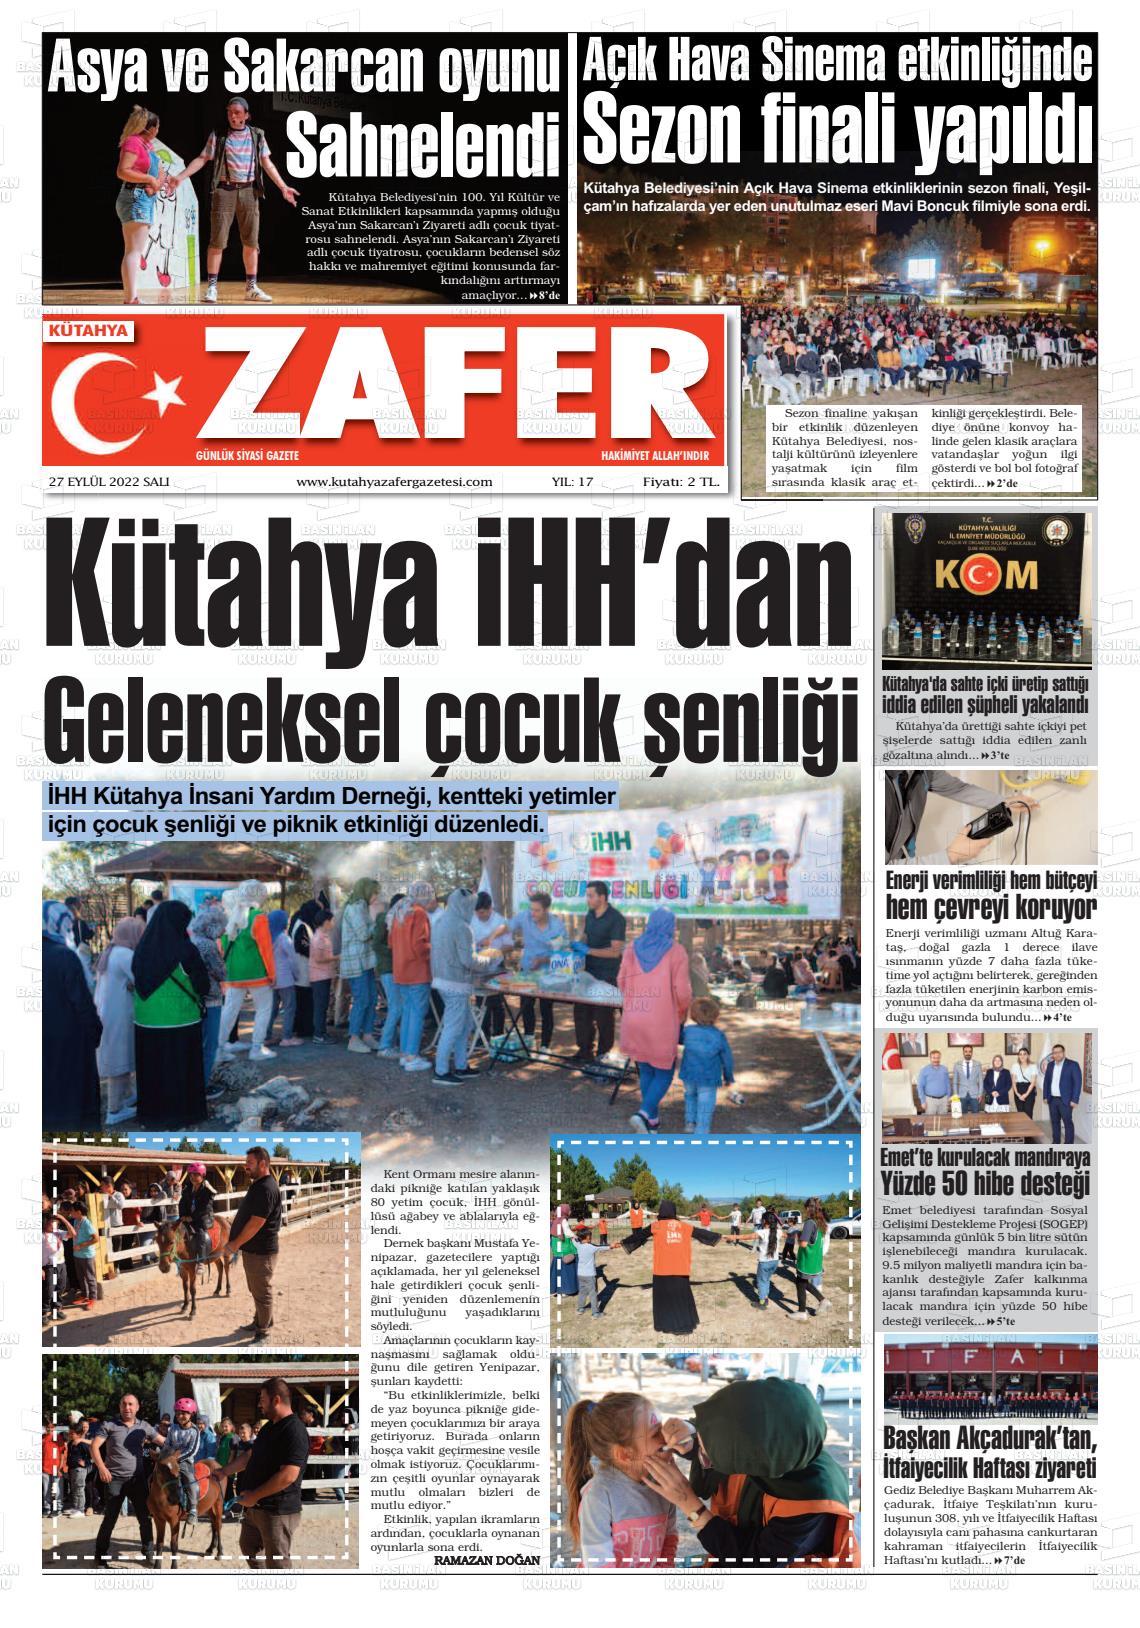 27 Eylül 2022 Kütahya Zafer Gazete Manşeti